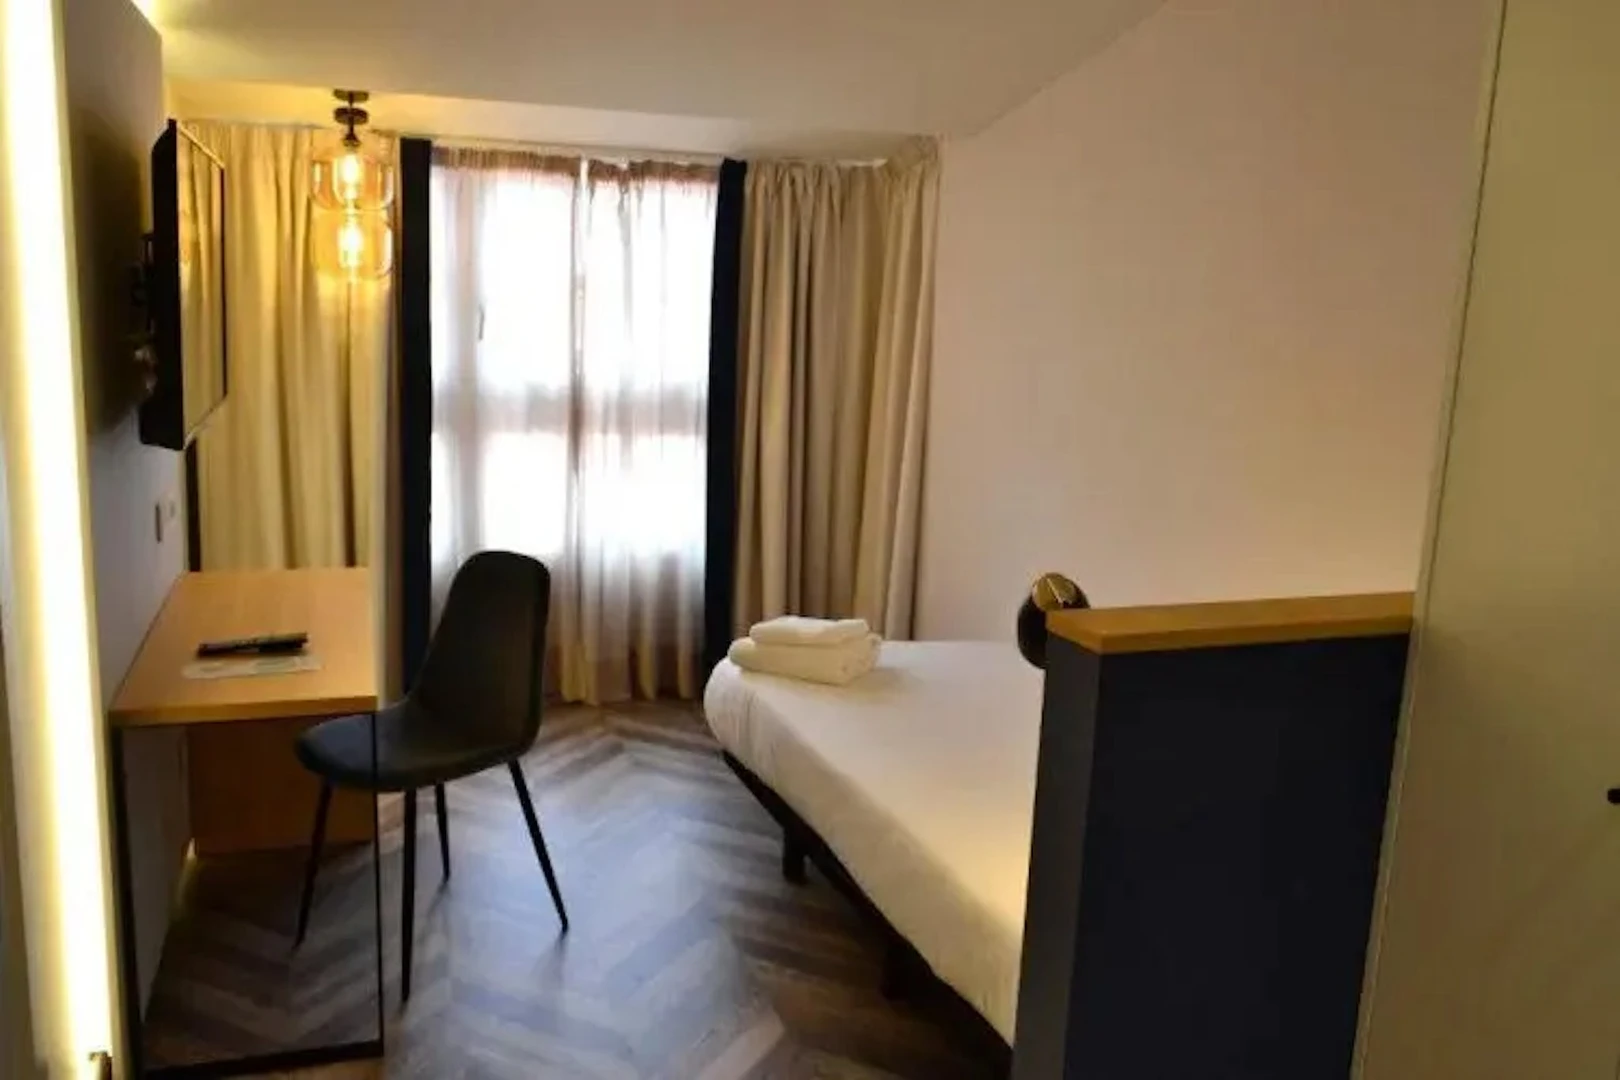 A Coruña içinde 2 yatak odalı konaklama